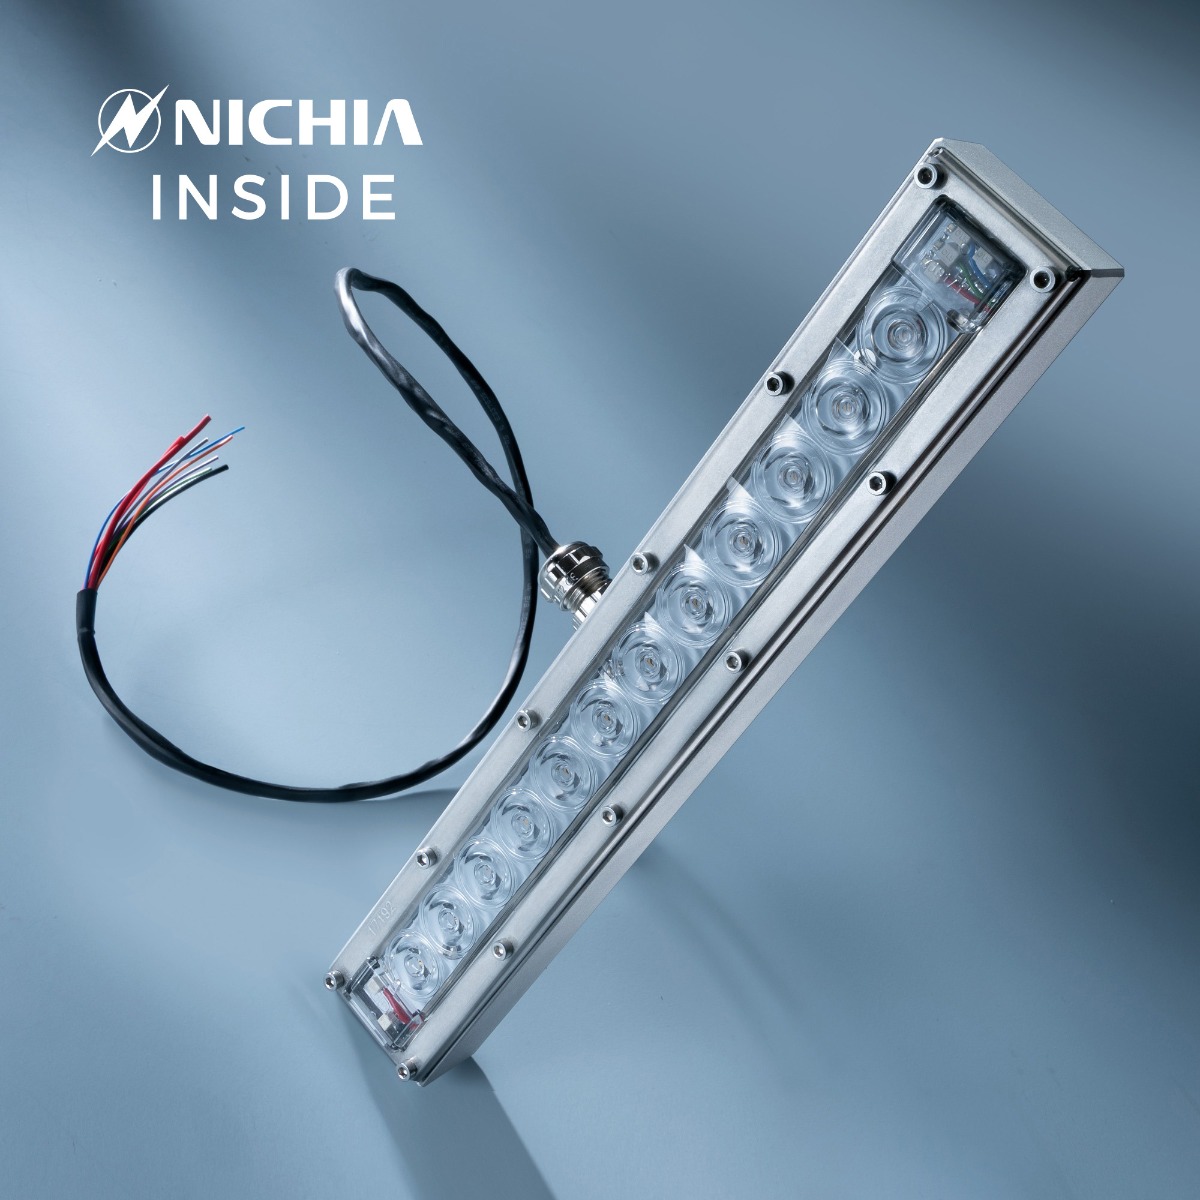 Módulo LED Nichia UVC violeta 280nm 12 LED NCSU334B 630mW 29cm 48VDC IP67 con controlador incluido, para desinfección y esterilización 